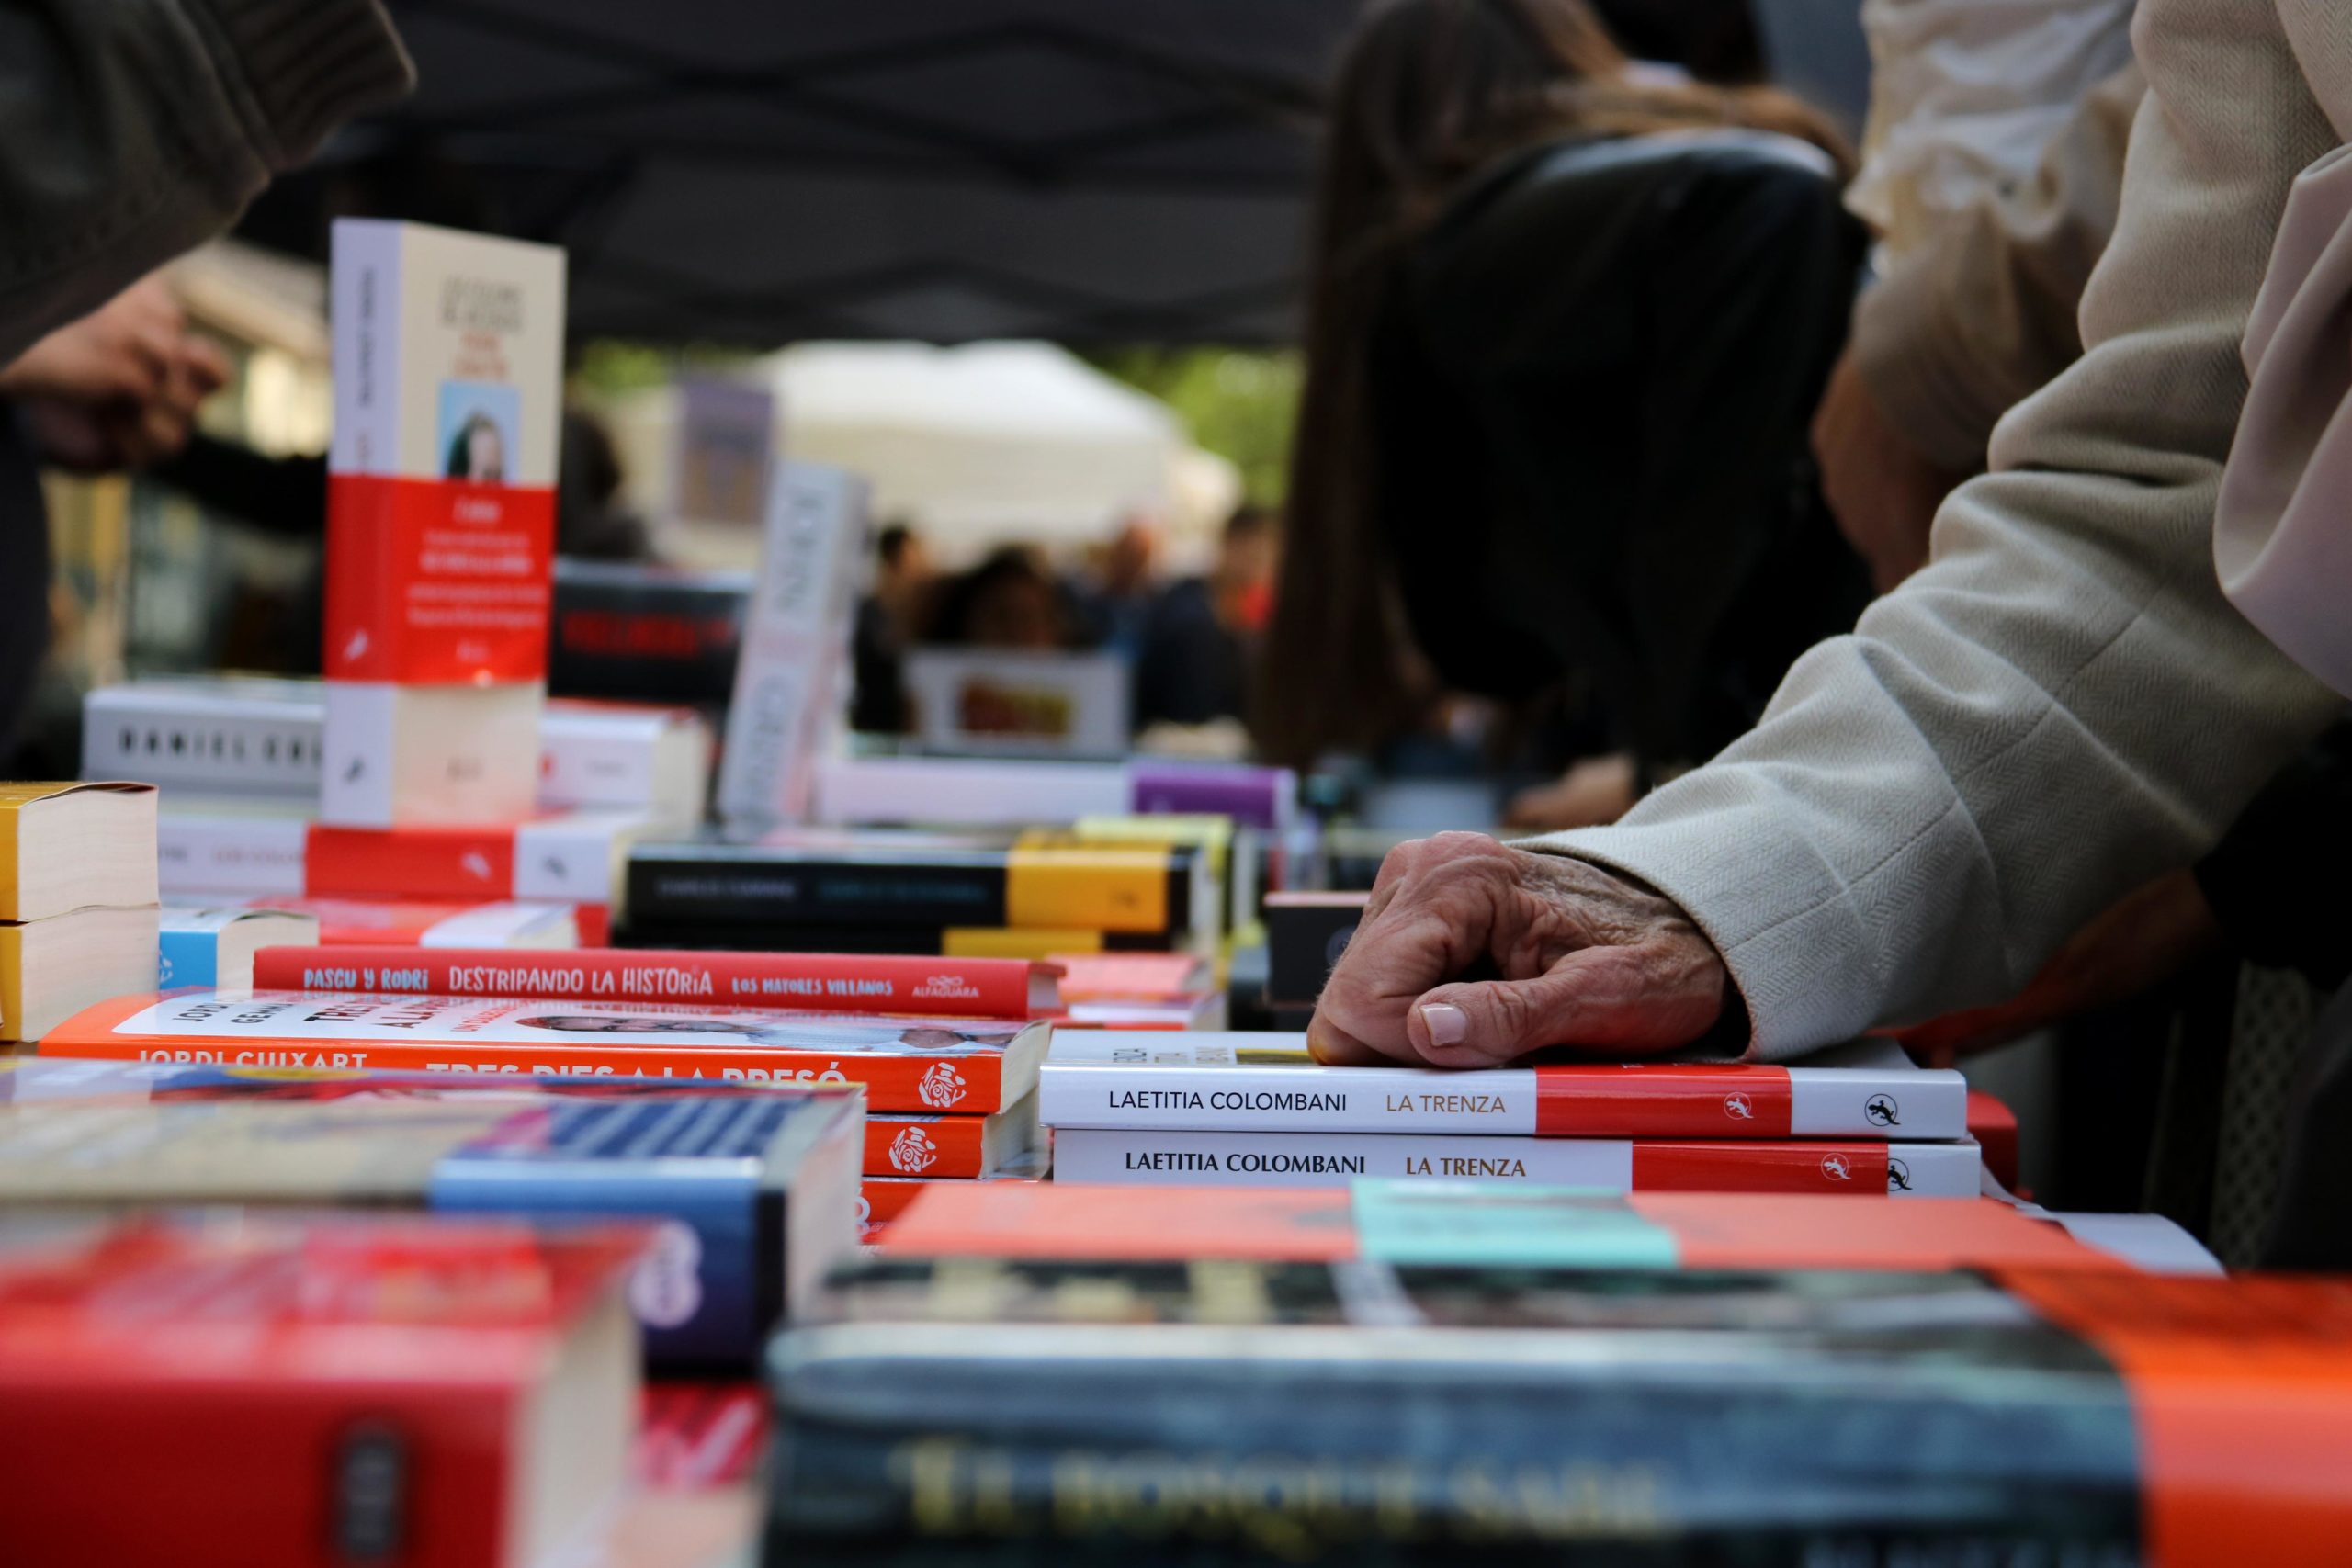 Un any més, les parades de llibres han omplert els carrers de Barcelona / ACN